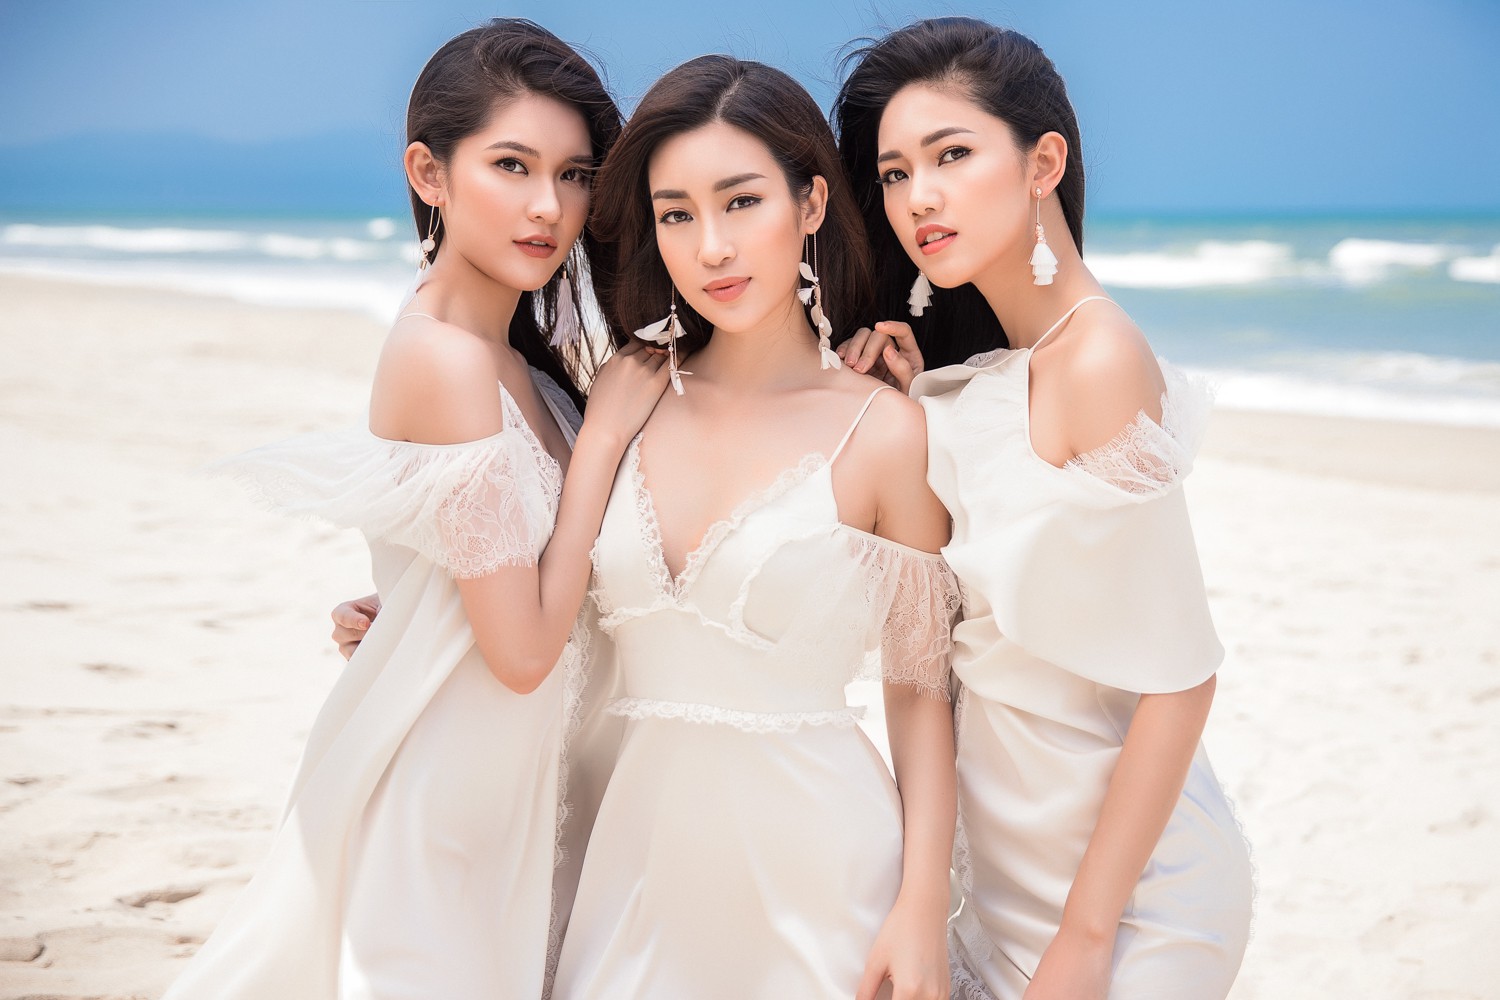 Cả 3 diện đầm trắng, khoe nhan sắc hút hồn trên bãi biển Đà Nẵng.